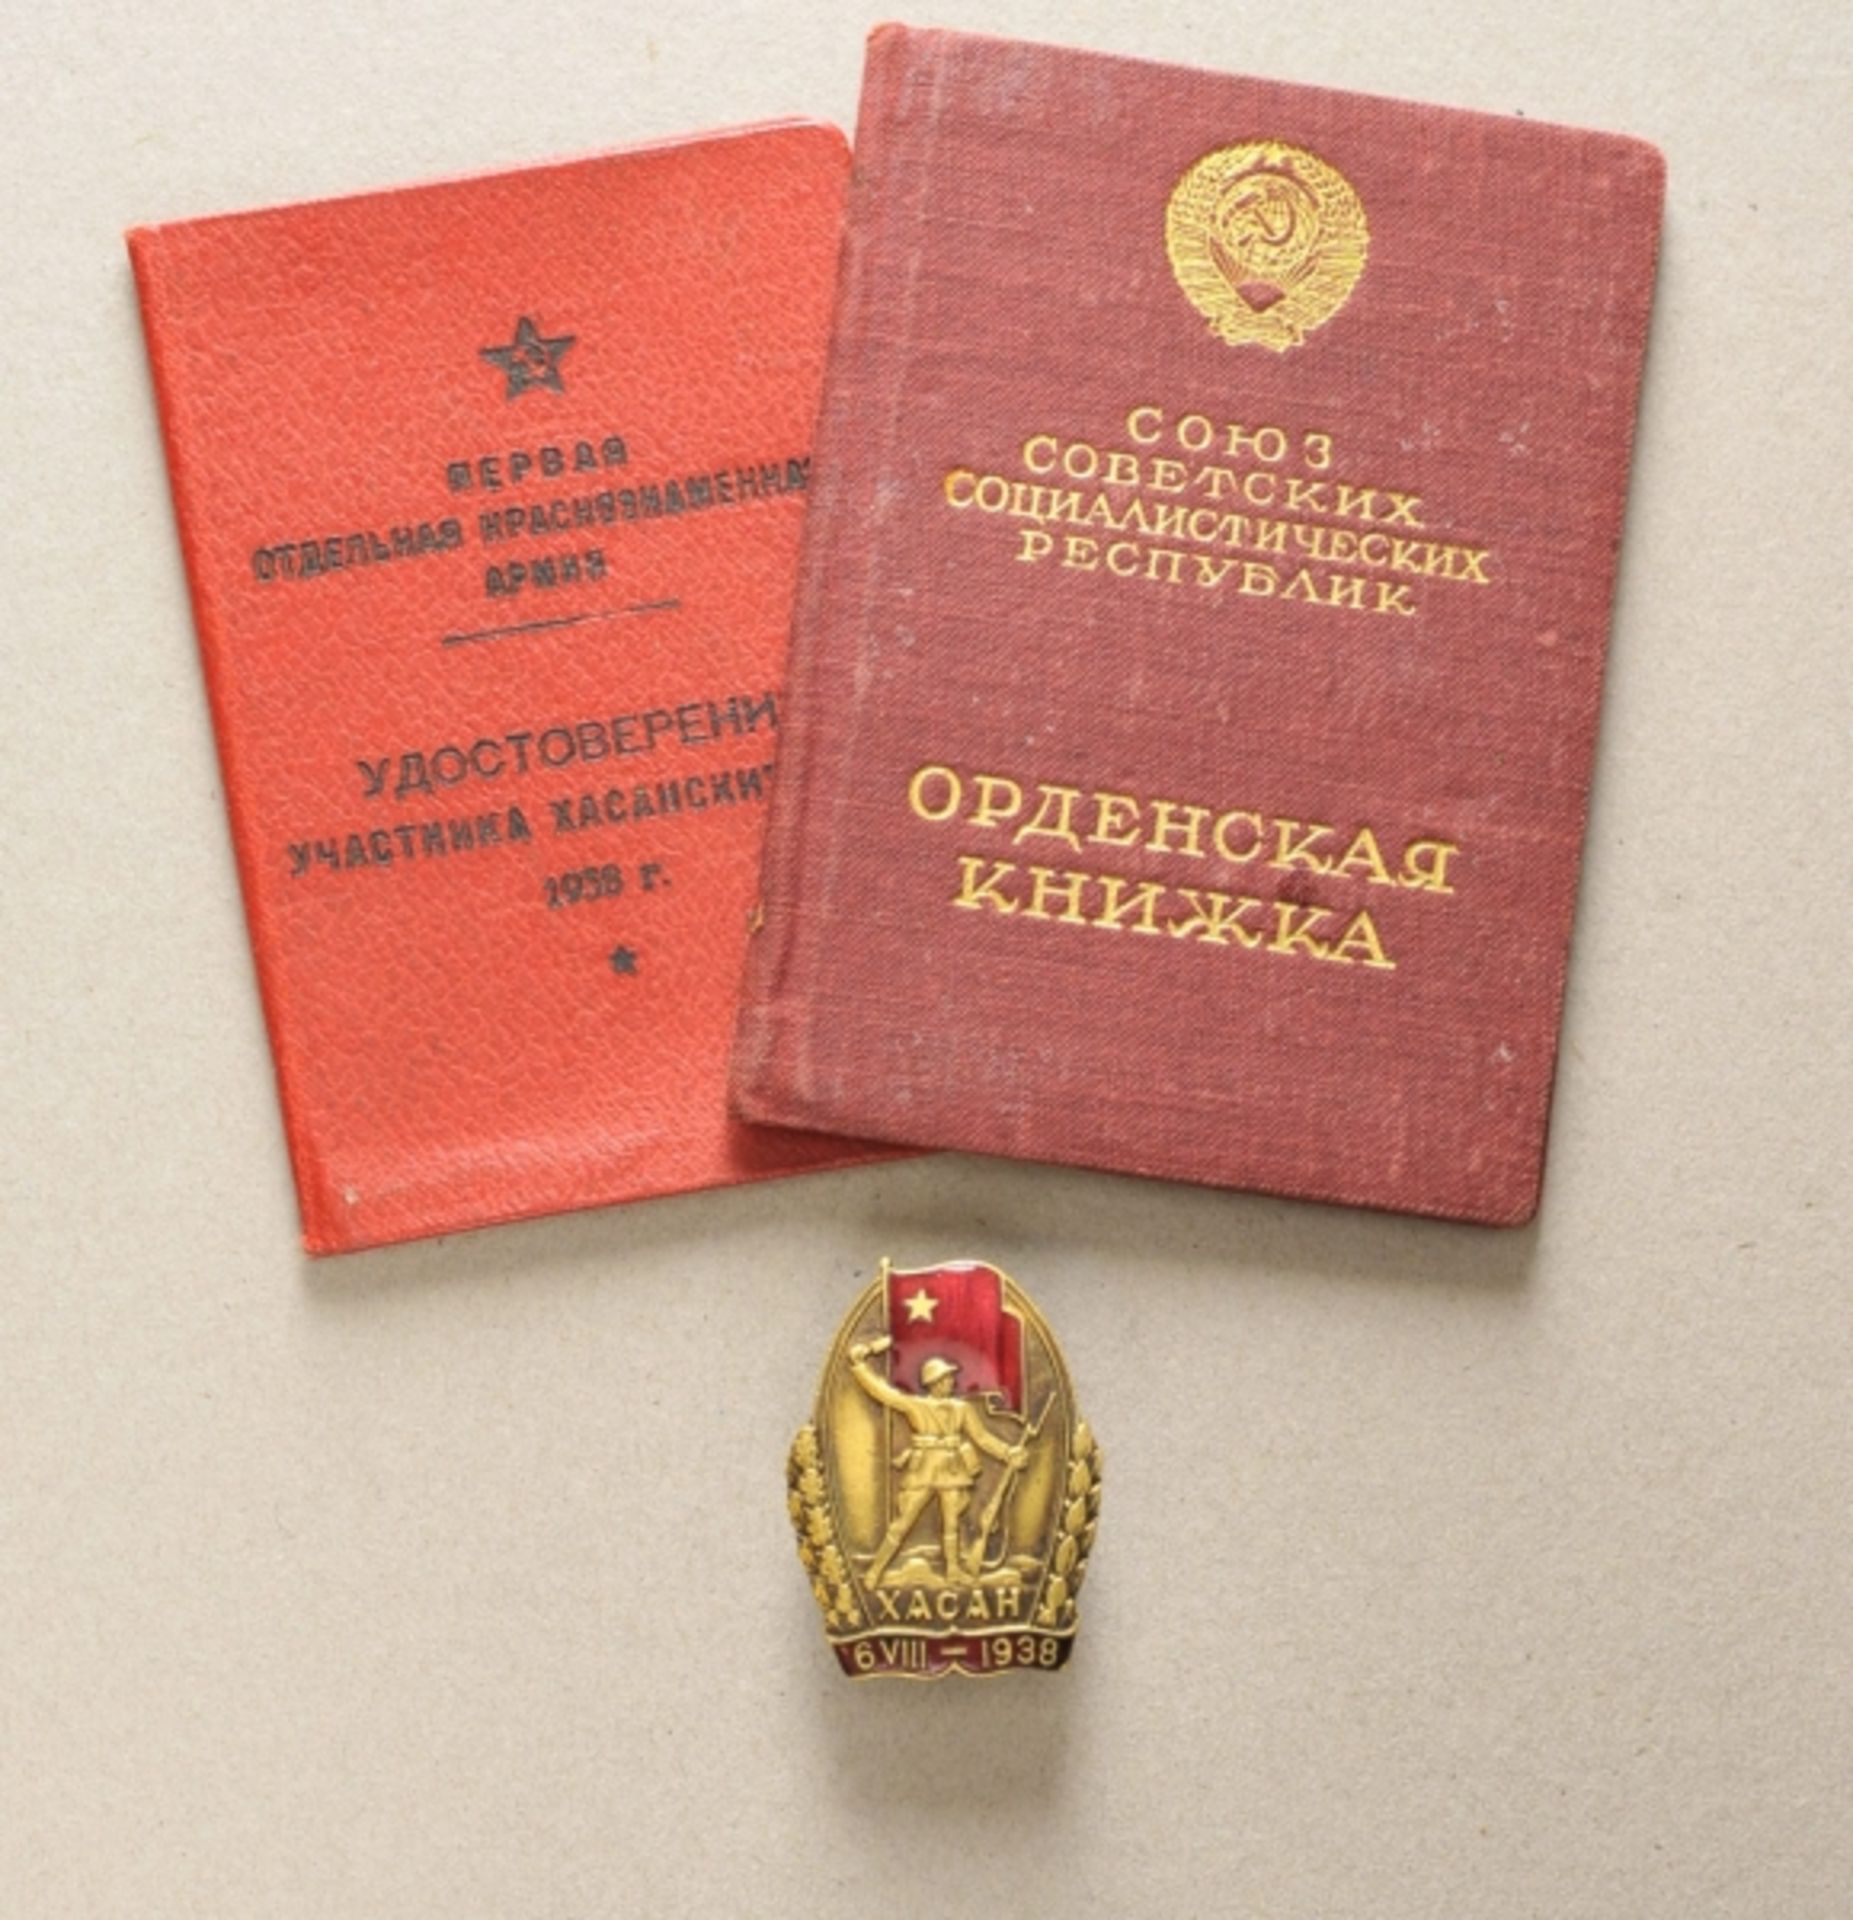 Sowjetunion: Nachlass einer Frau mit zwei Verleihungsbüchern.Kazan-Abzeichen, an Schraubscheibe; mit